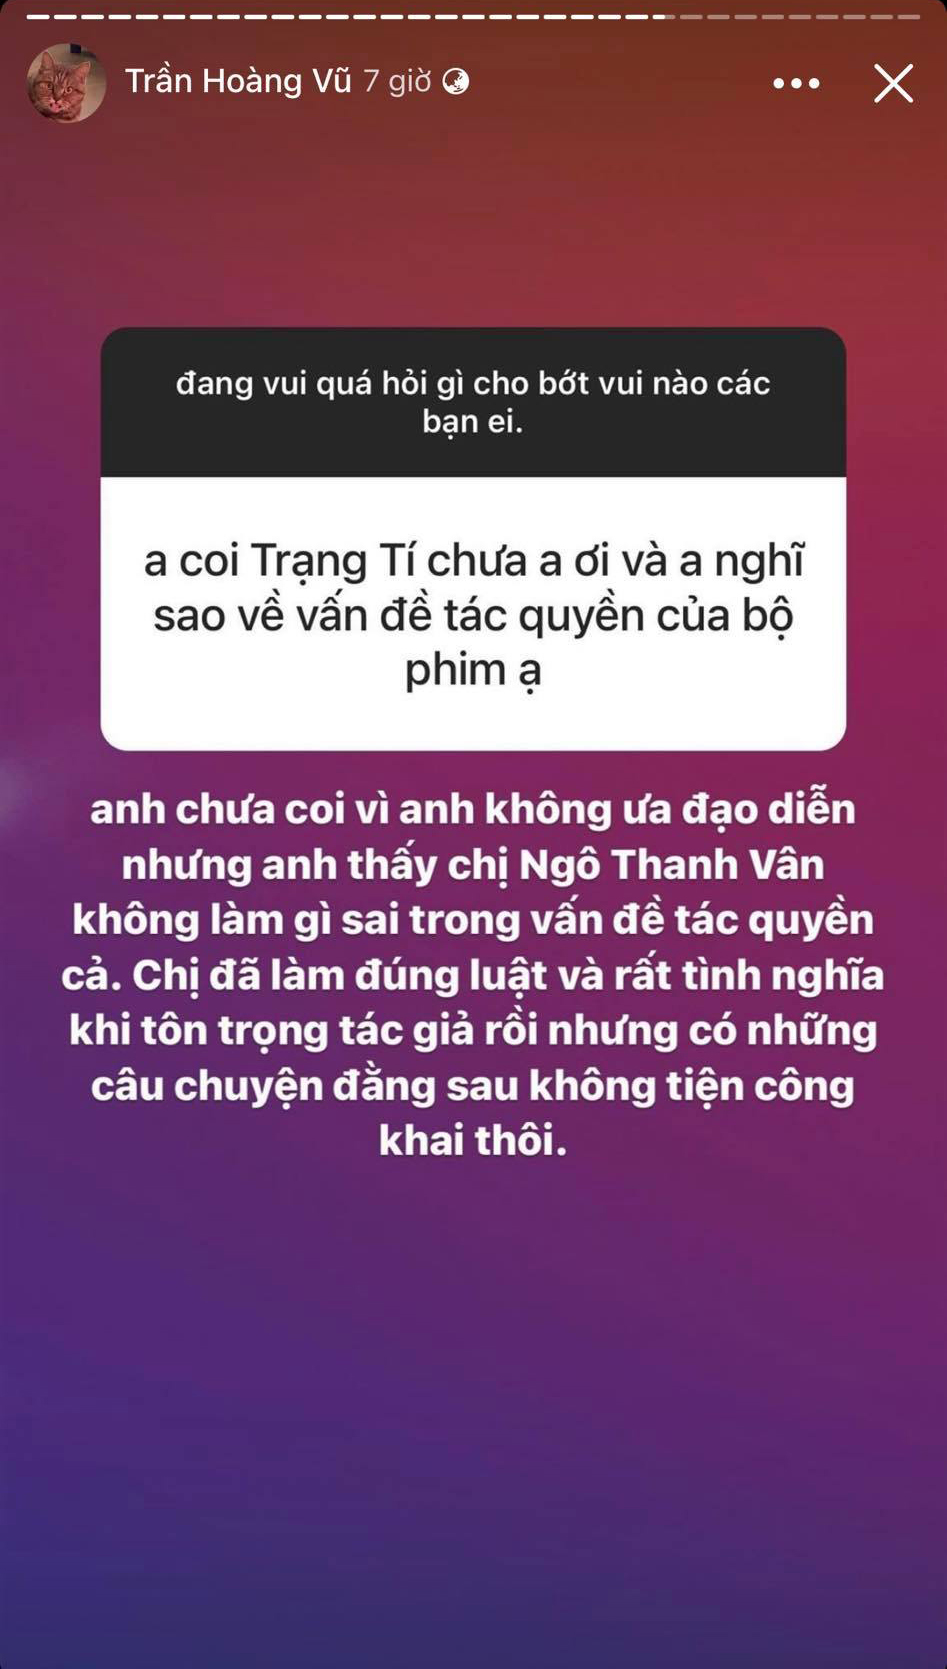  
Milor Trần cho biết Ngô Thanh Vân đã làm rất đúng luật nhưng có những chuyện đằng sau không tiện công khai. (Ảnh: Chụp màn hình)